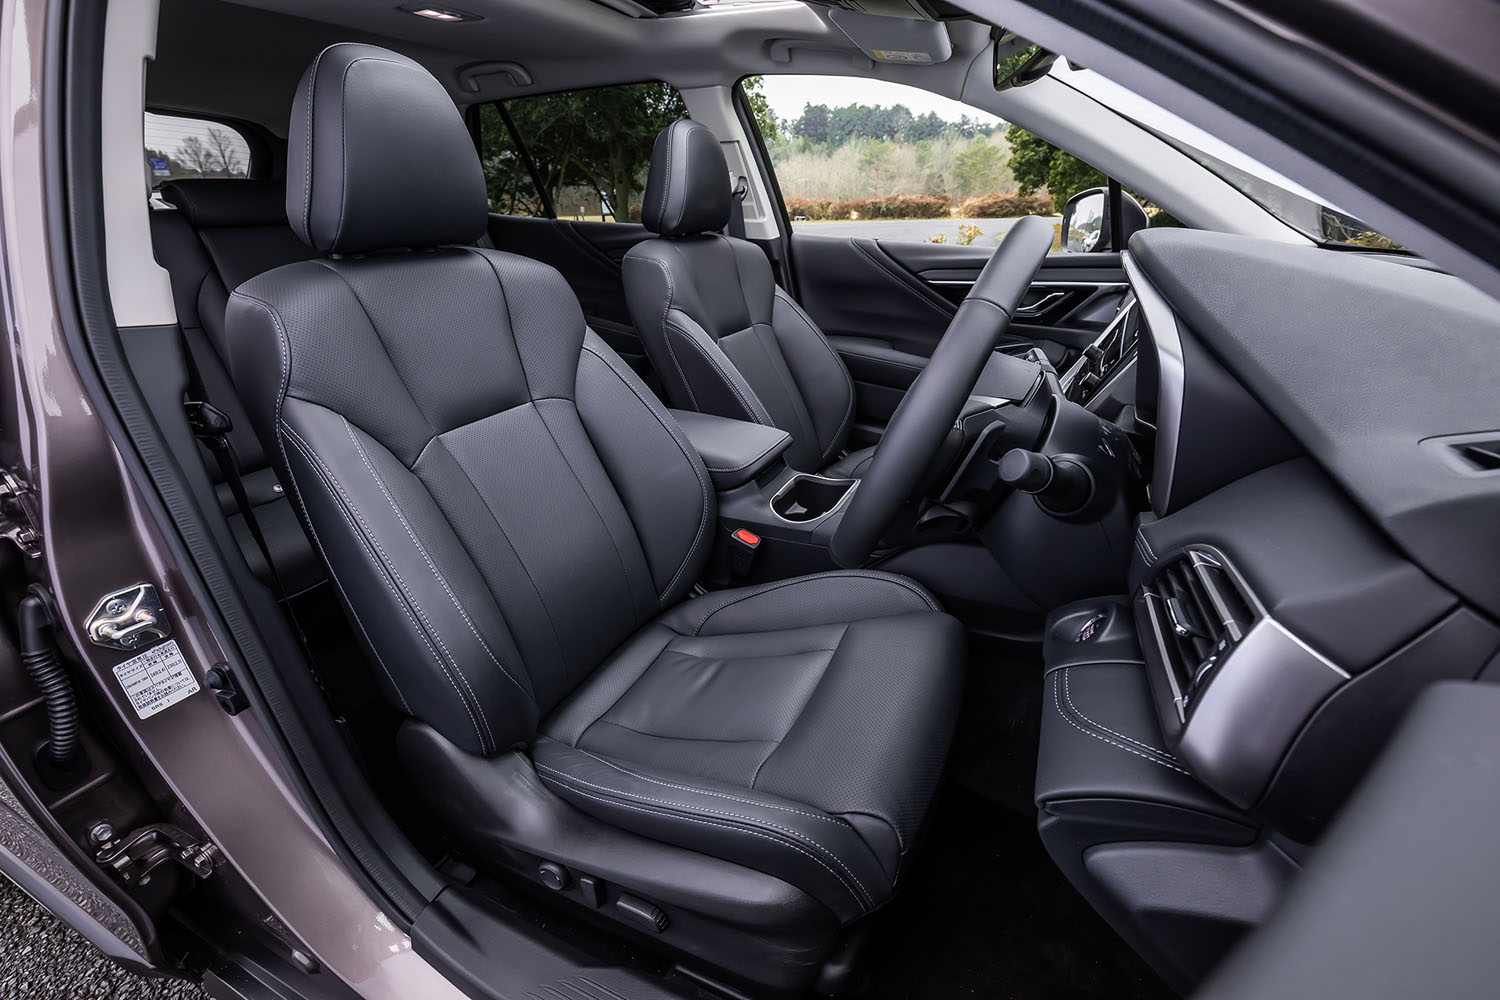 「レガシィ アウトバック リミテッドEX」の前席。運転席10ウェイ、助手席8ウェイの電動調整機構と3段階調整機能付きシートヒーターが内蔵されている。ナッパレザーのシート表皮はオプションで、写真のブラックまたはタンの2色から選択できる。